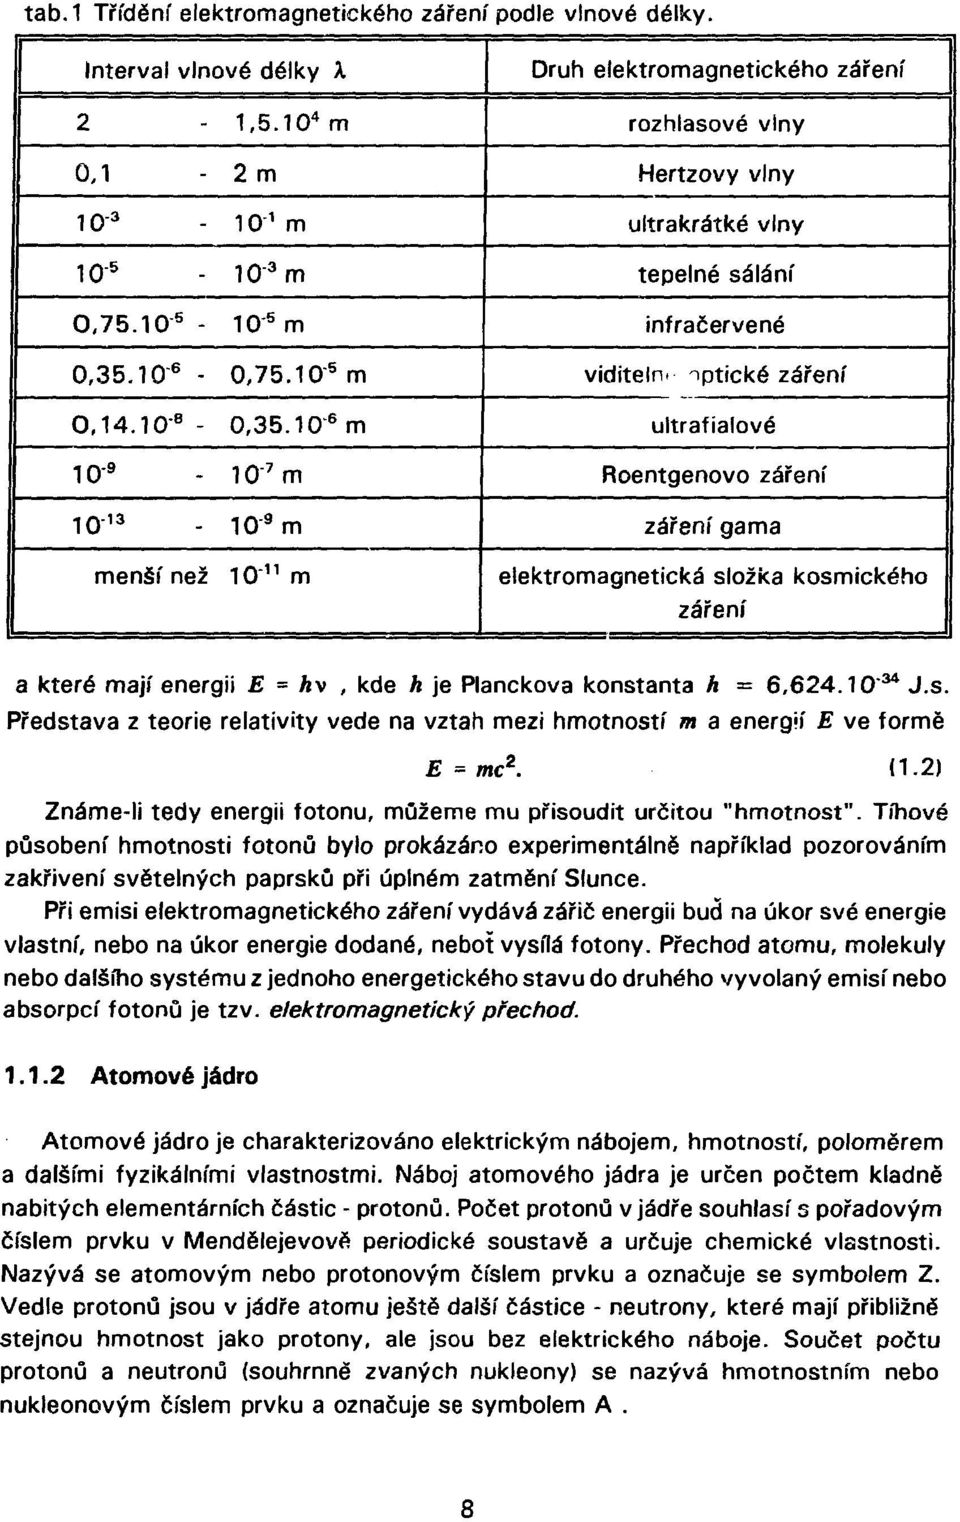 optické záření ultrafialové Roentgenovo záření záření gama menší než 10' 11 m elektromagnetická složka kosmického záření a které mají energii E = hv, kde h je Planckova konstanta A = 6,624.10 34 J.s. Představa z teorie relativity vede na vztah mezi hmotností m a energií E ve formě E = me*.